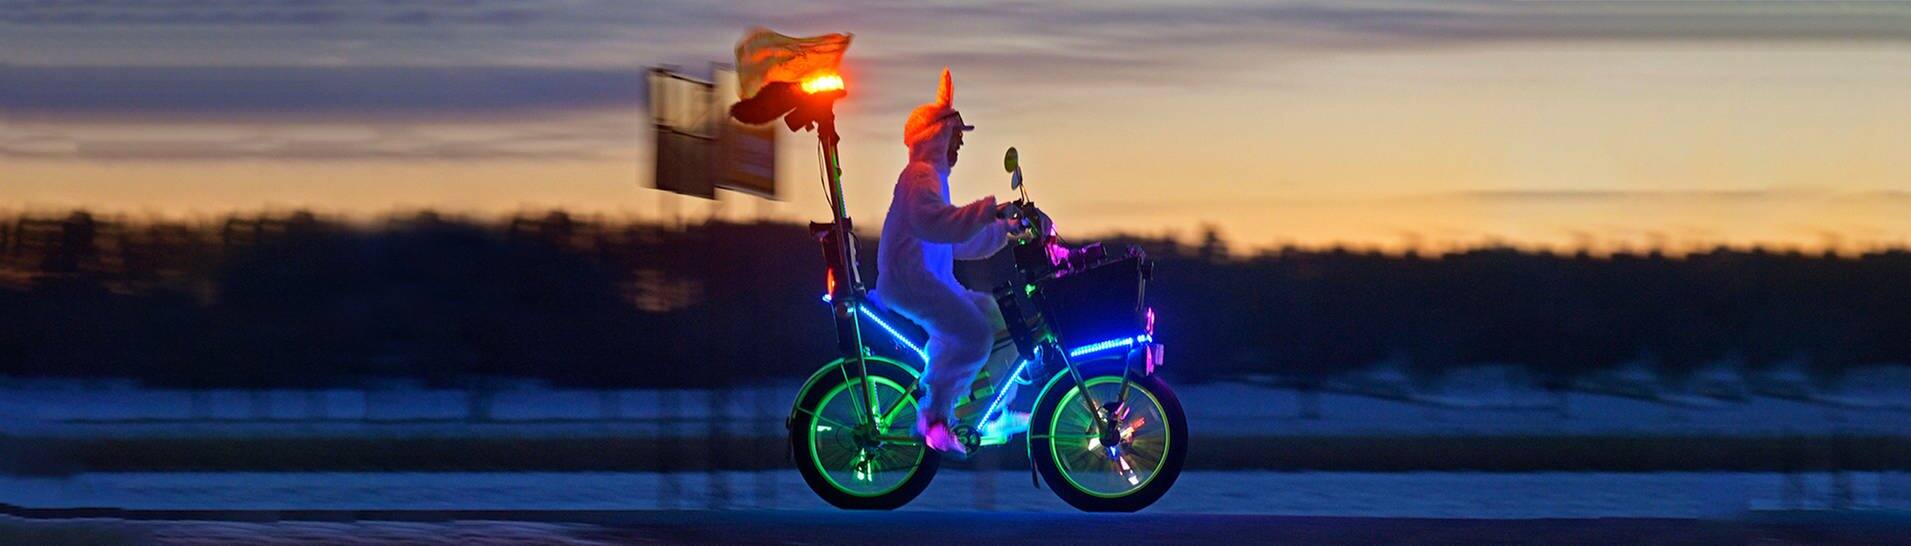 Fahrradfahrer bunt bei Nacht: Nachts auf richtiges Licht achten! (Foto: IMAGO, cyclist in a carnival costume)